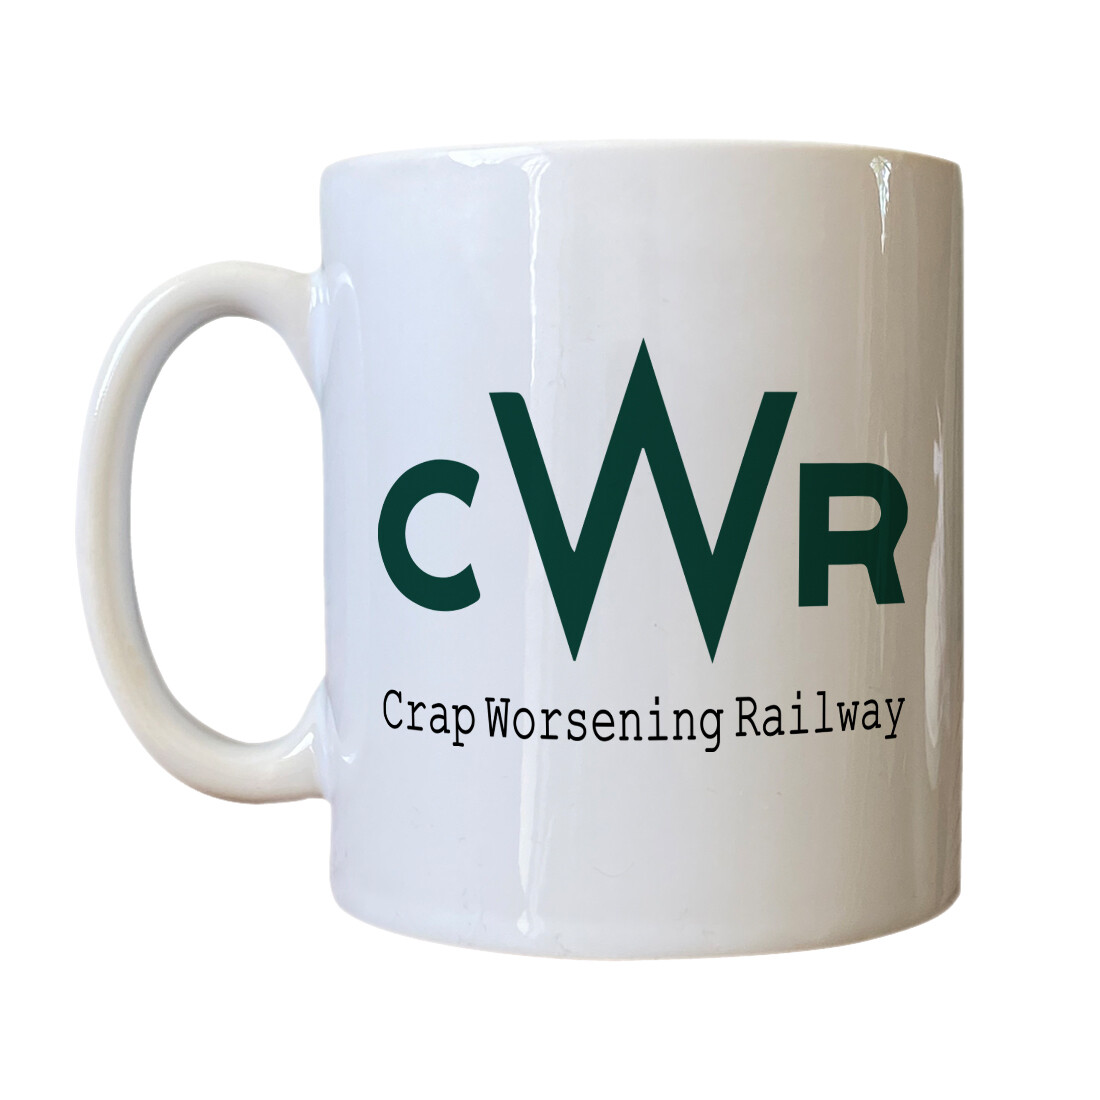 Personalised 'Crap Worsening Railway' Drinking Vessel